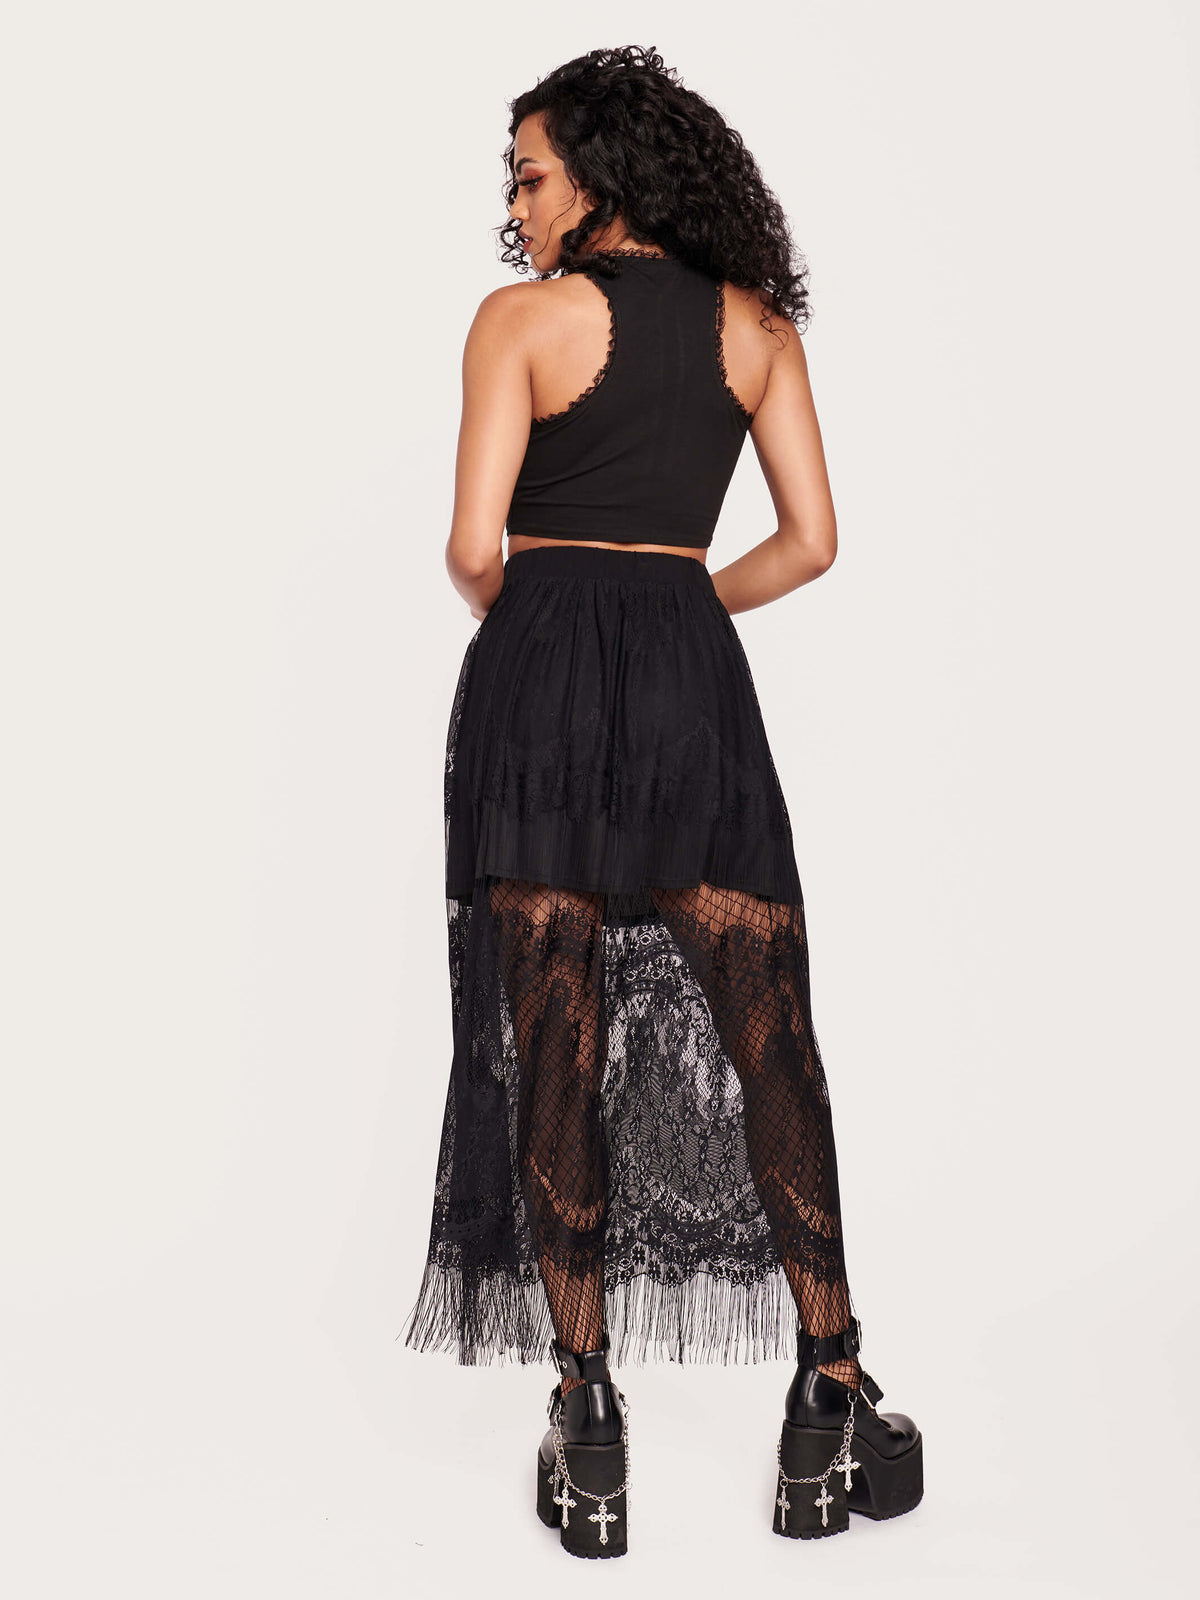 Black lace skirt with eyelash hem.